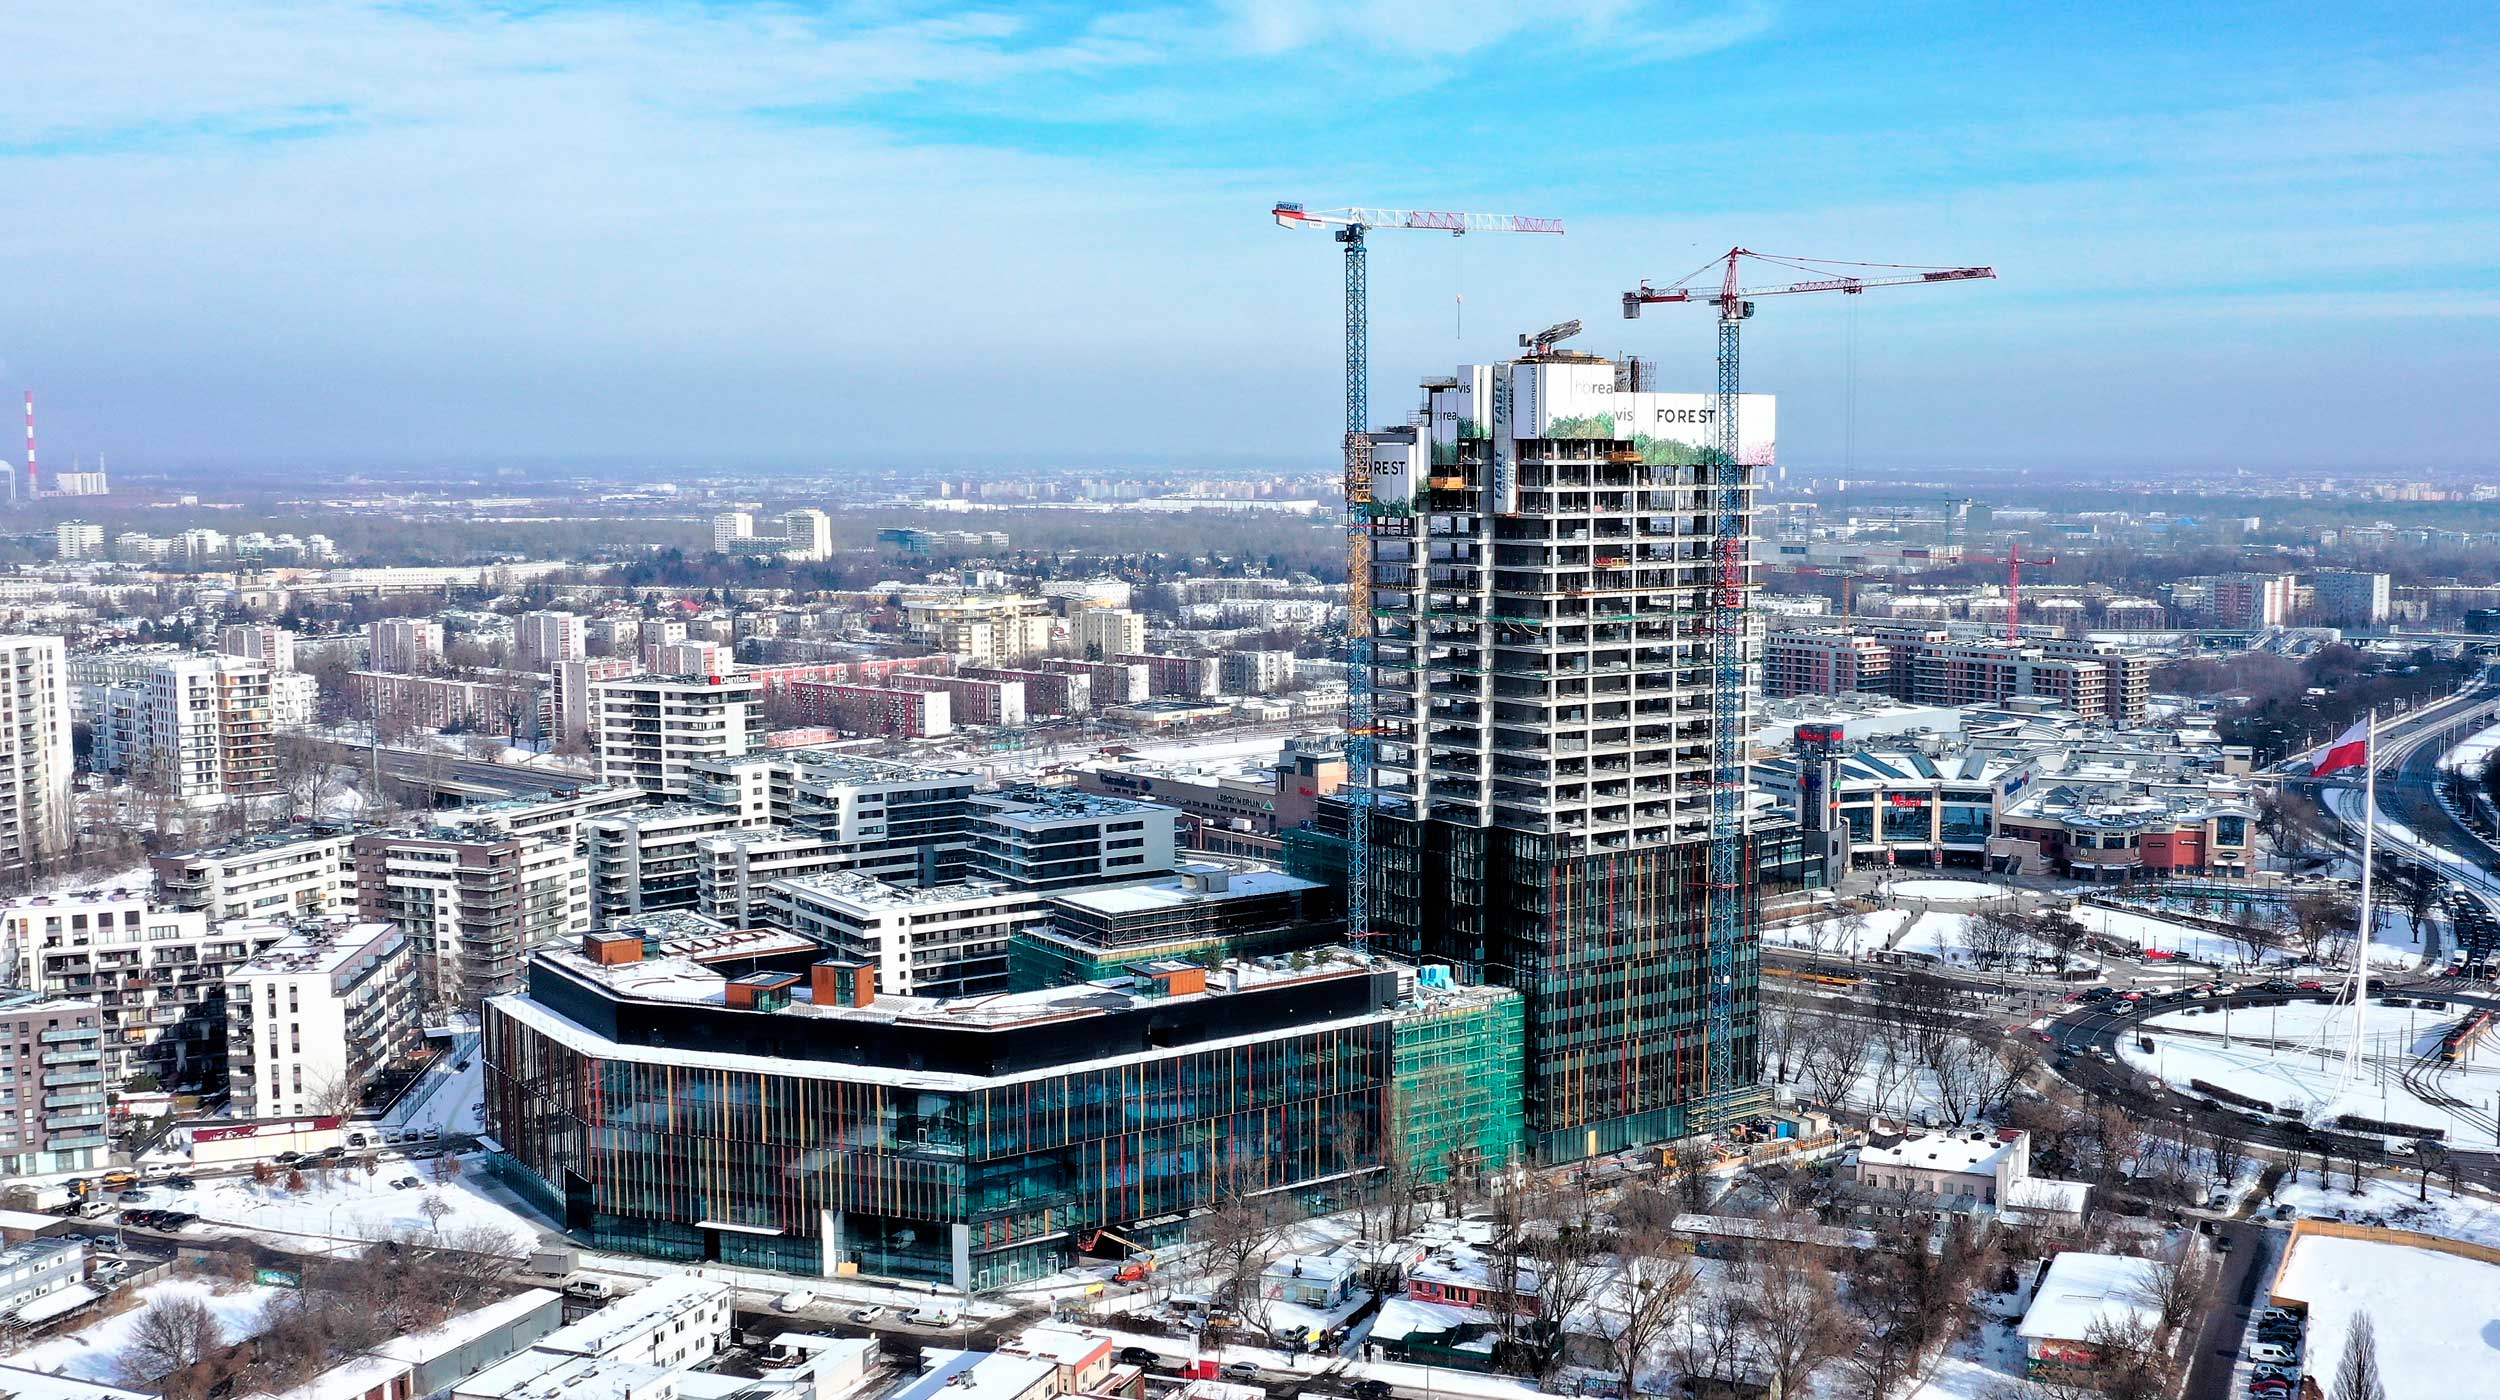 En Varsovia se está construyendo el complejo de oficinas y servicios Forest, un rascacielos de 120 metros de altura.